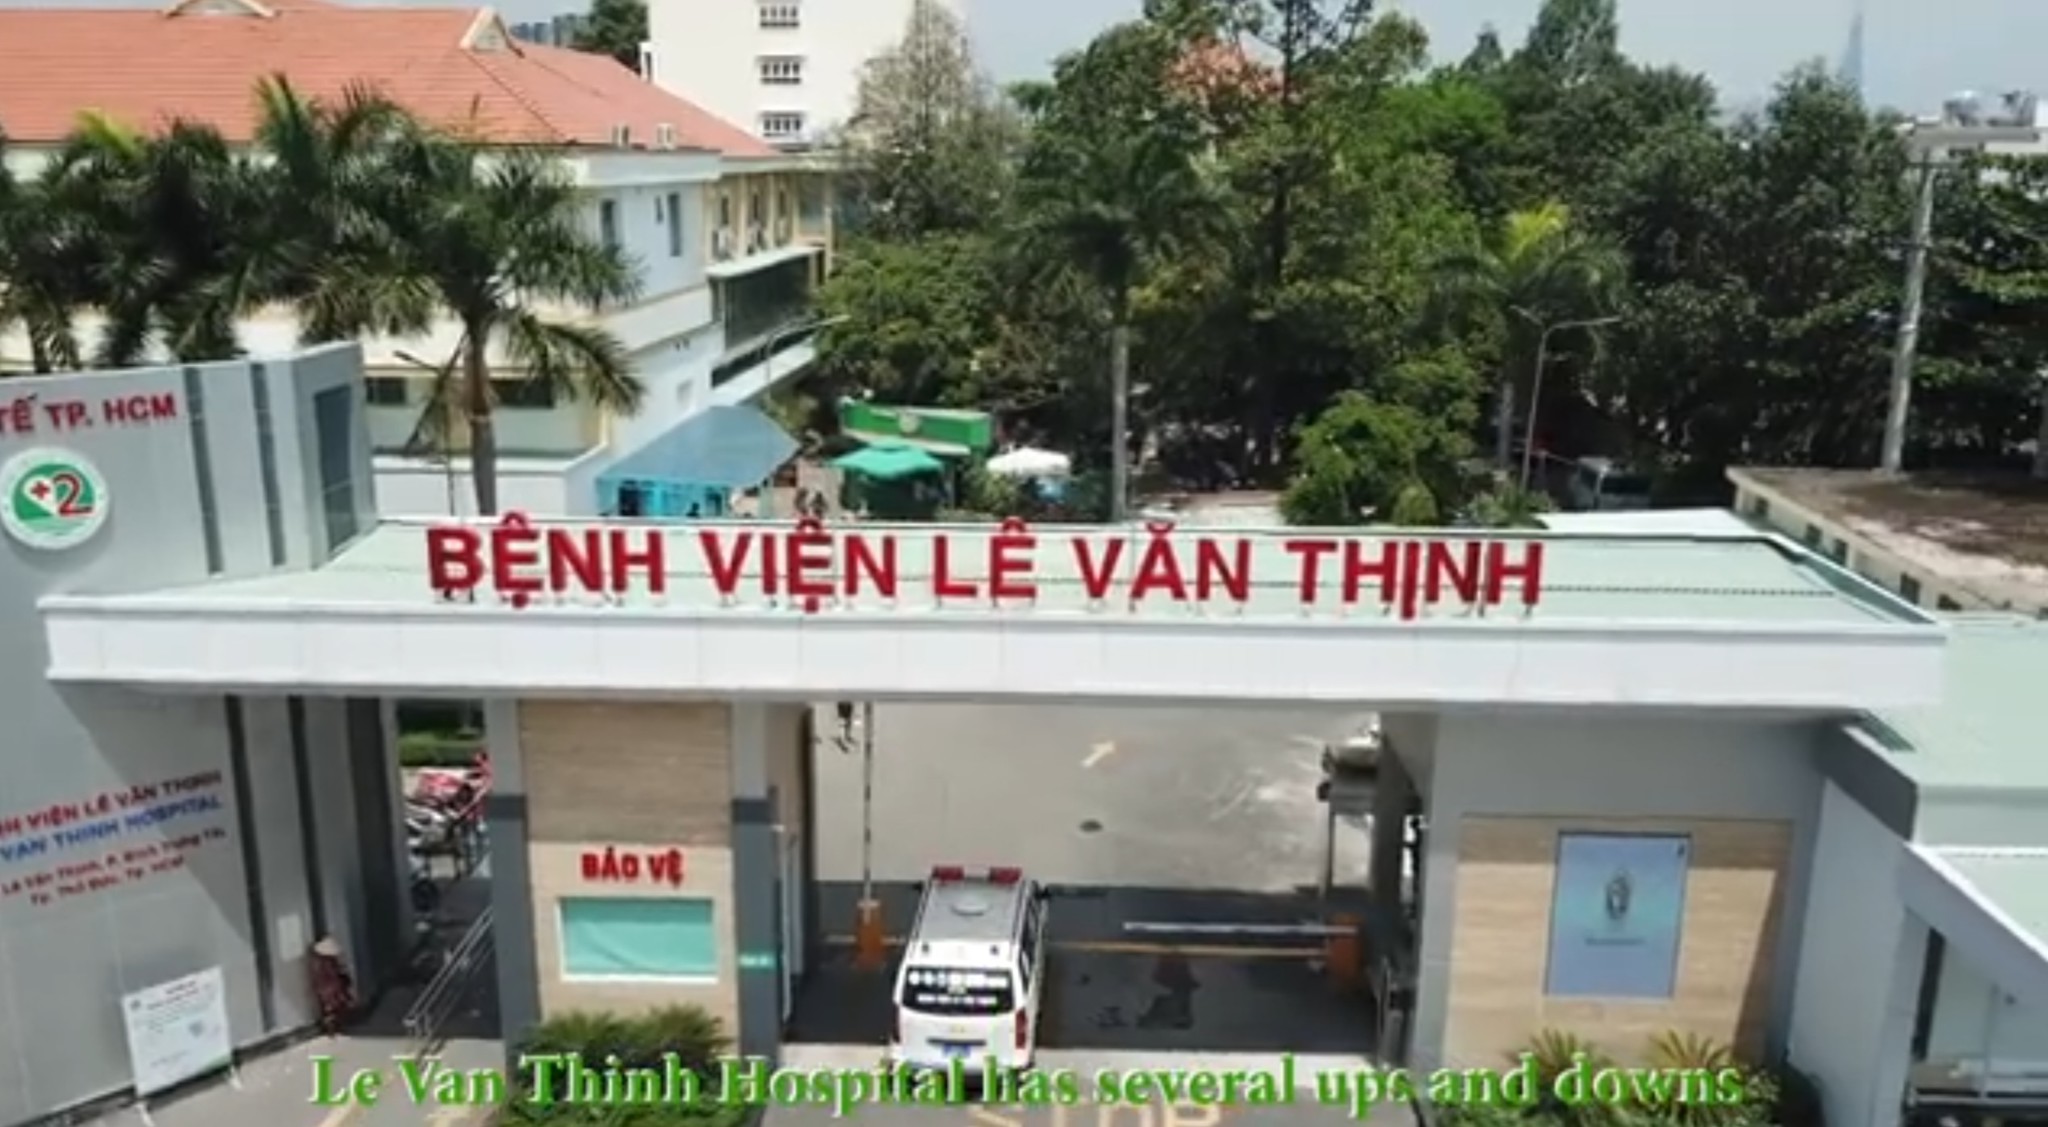 Kỷ niệm 15 năm thành lập bệnh viện Lê Văn Thịnh